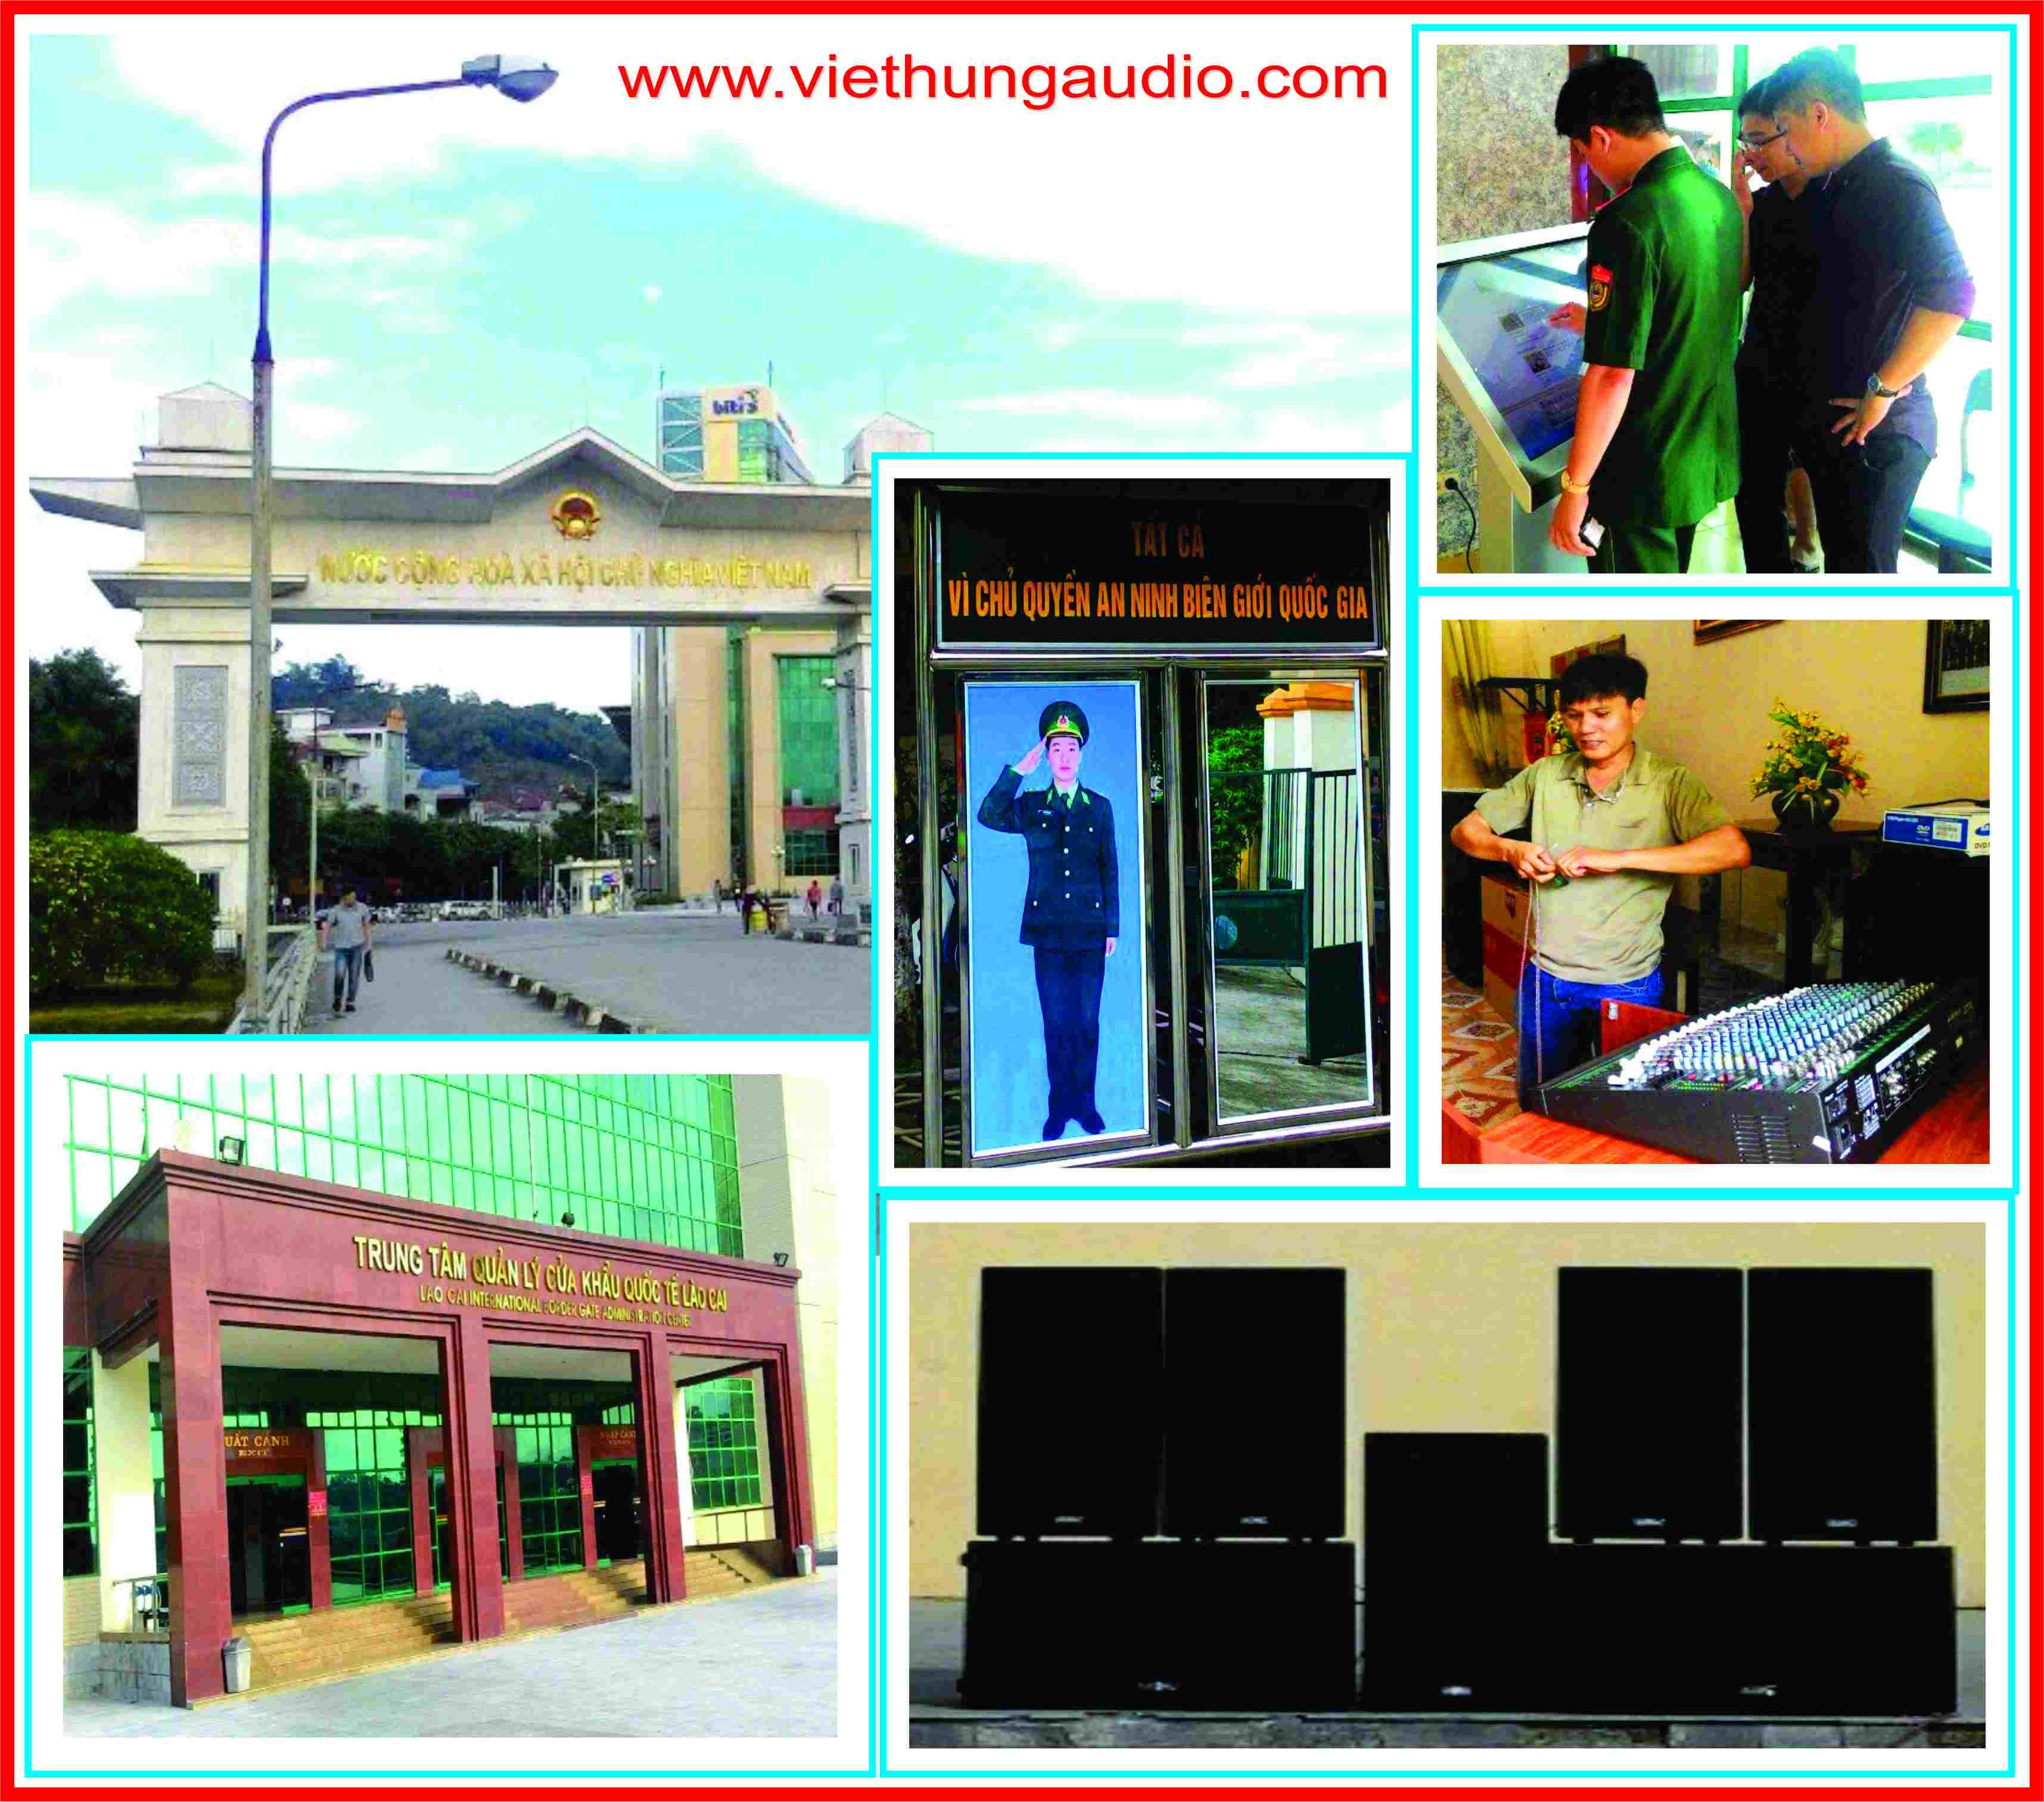 Tư vấn, thiết kế, lắp đặt hệ thống âm thanh hàng đầu Việt Nam.